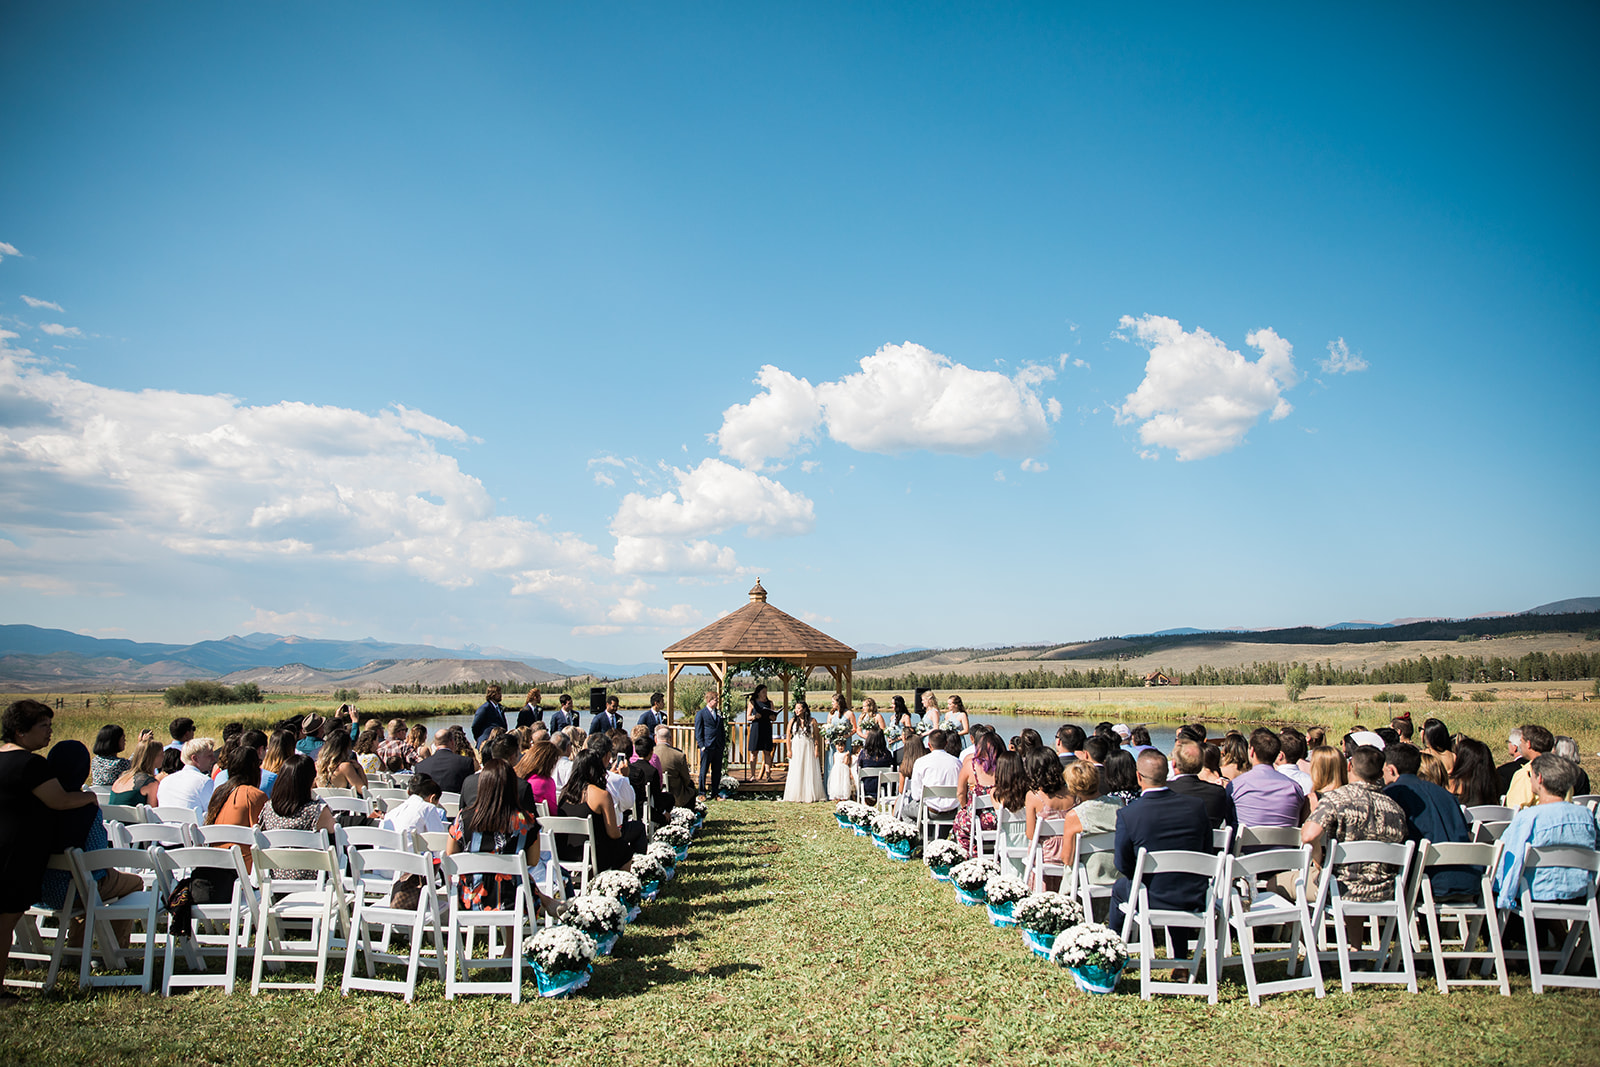 outdoor wedding ceremony site in Colorado mountains